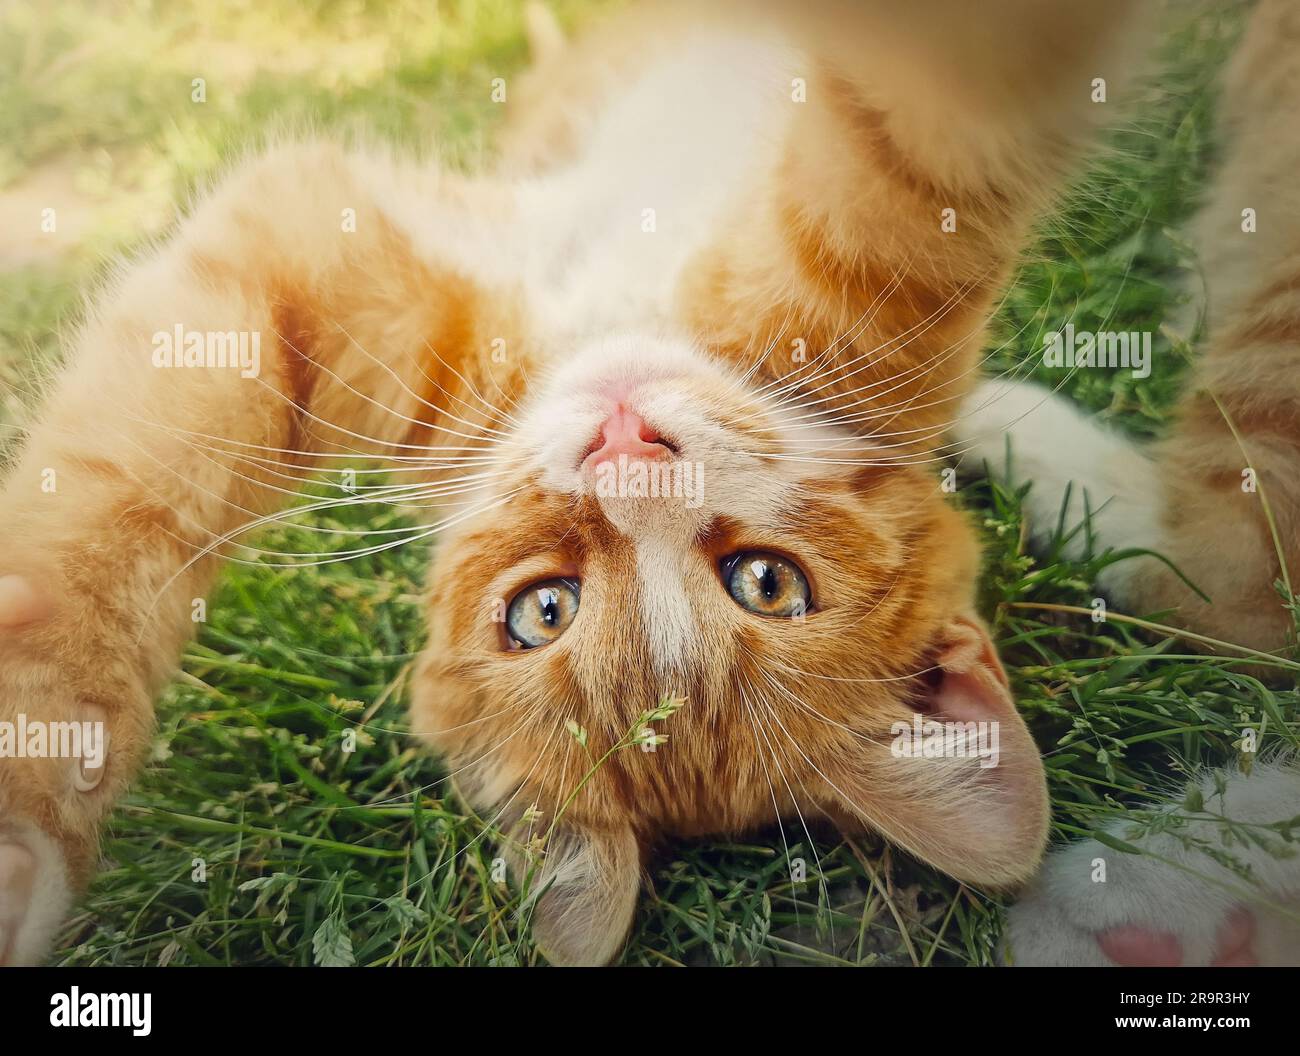 Verspieltes orangefarbenes Kätzchen, das kopfüber auf dem grünen Gras liegt. Süße kleine Ingwerkatze in der Natur Stockfoto